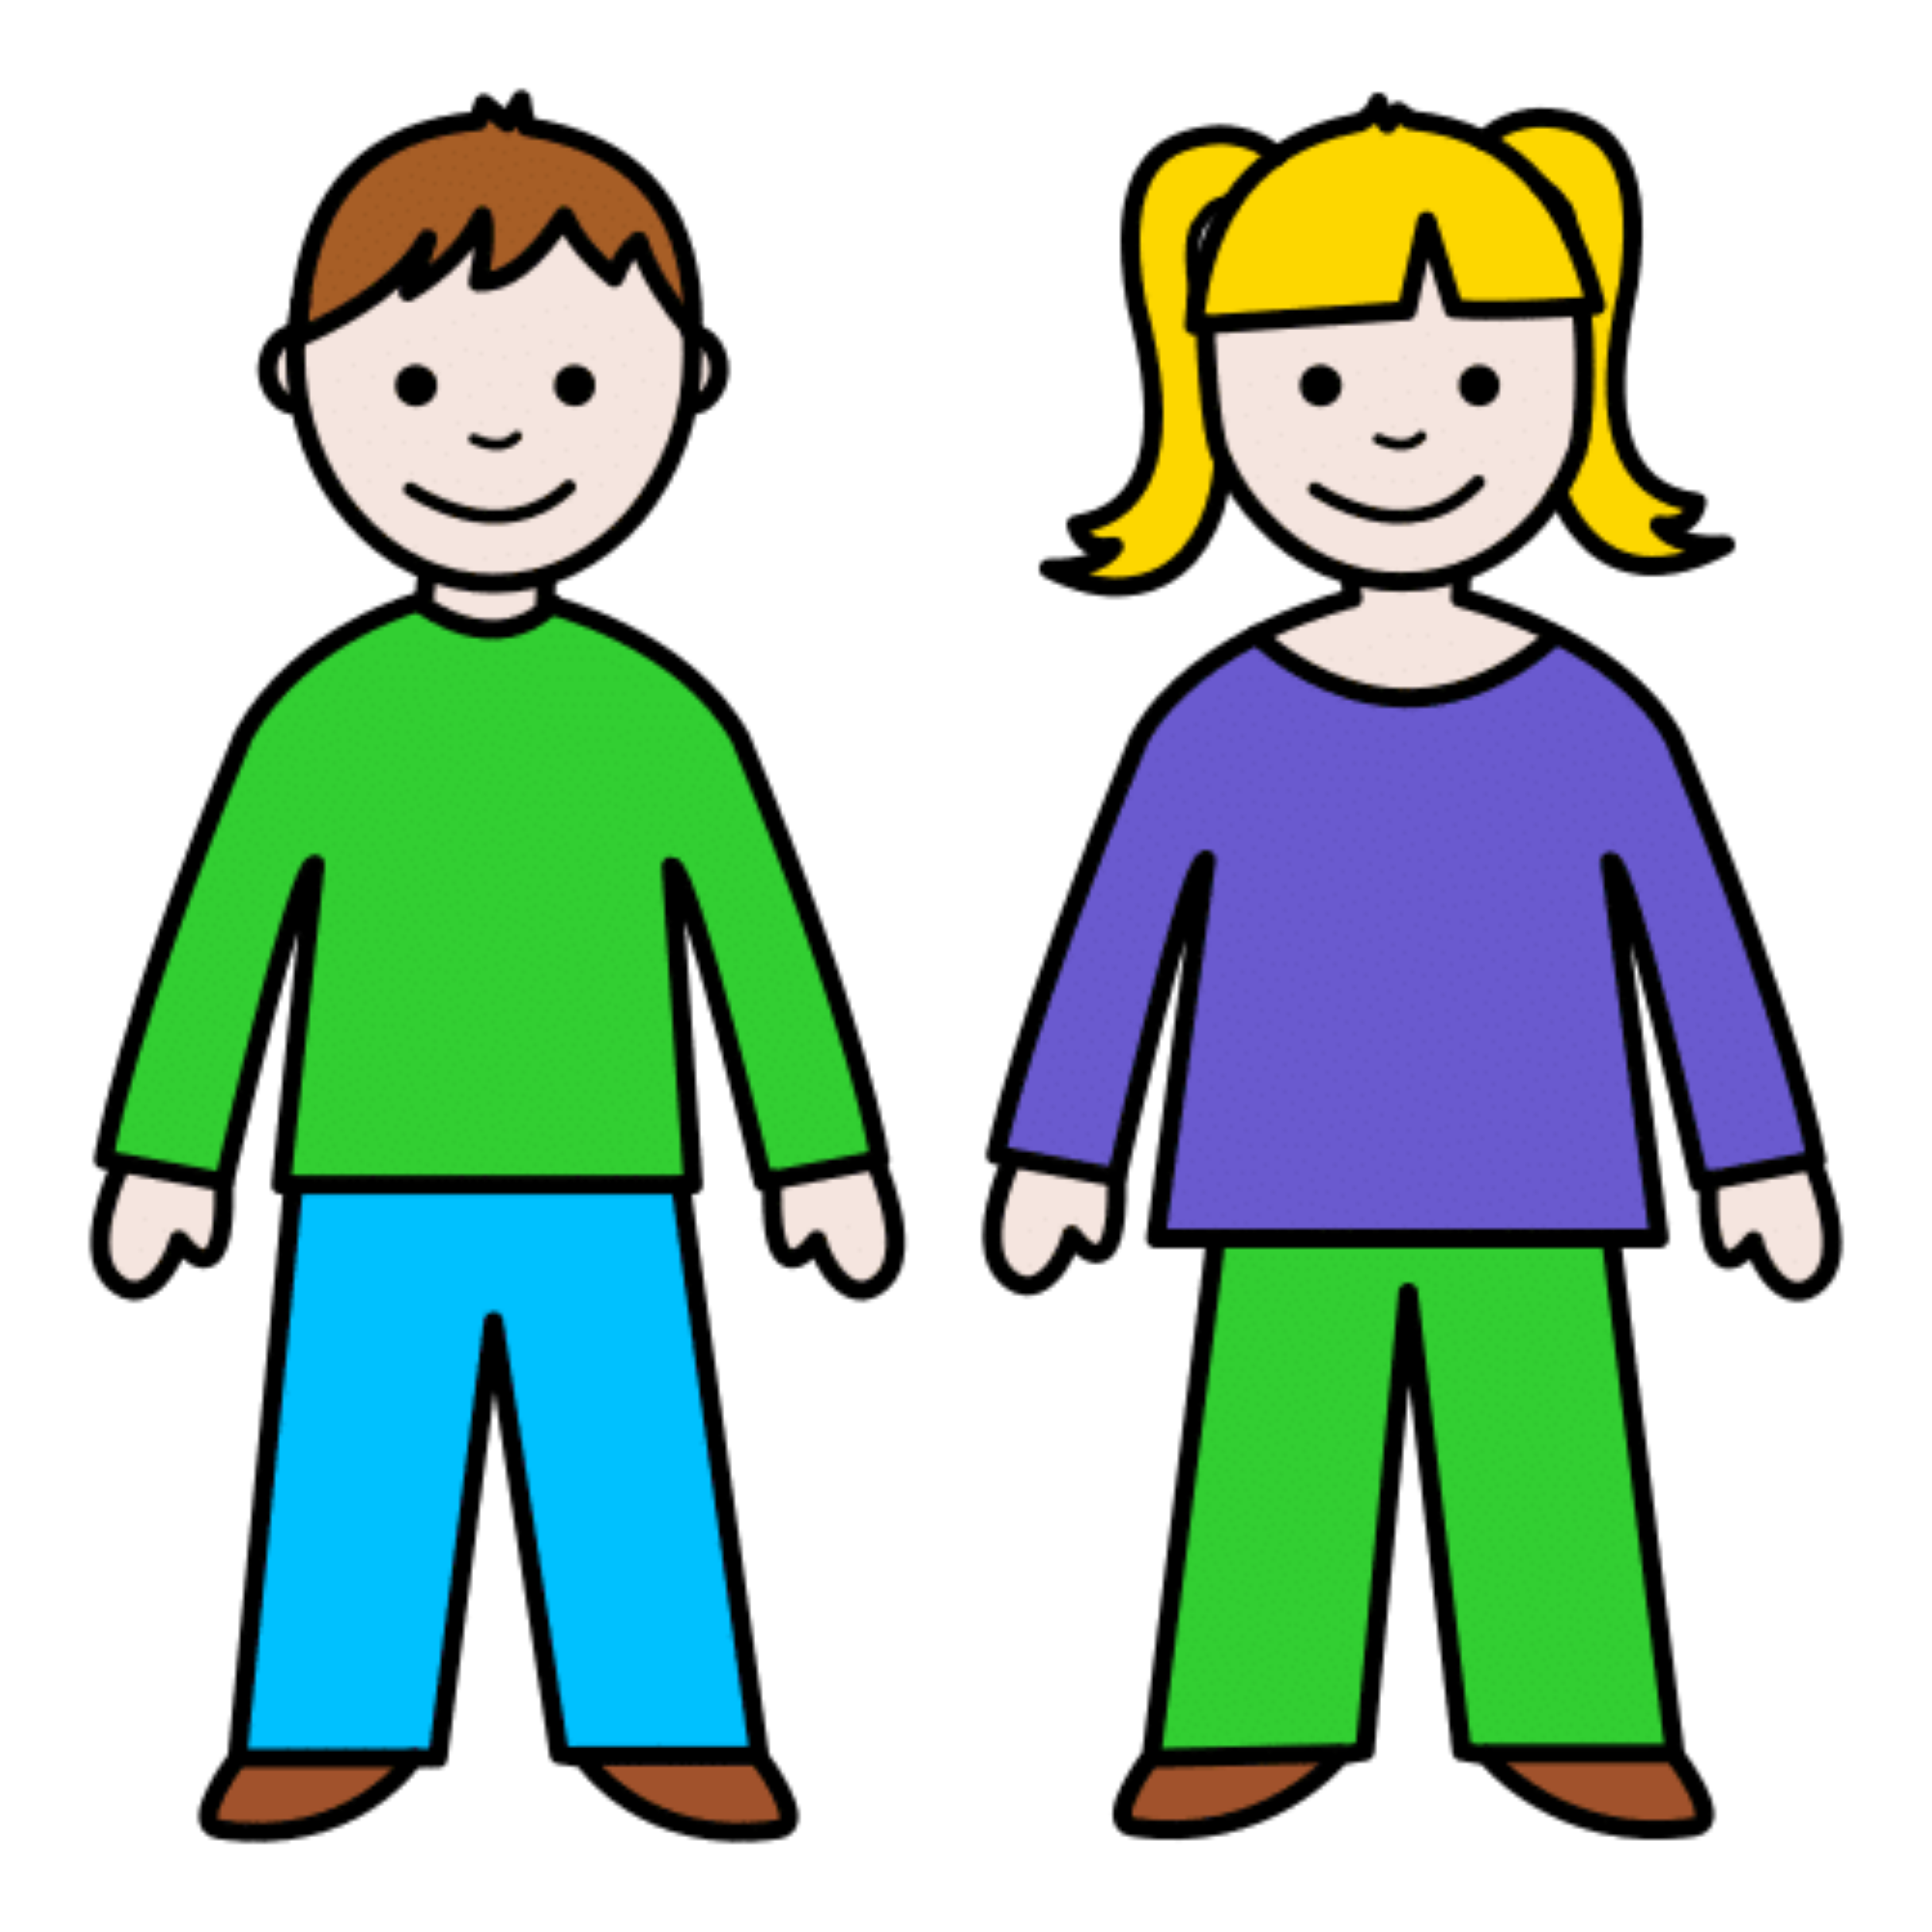 La imagen muestra a un niño y a una niña.